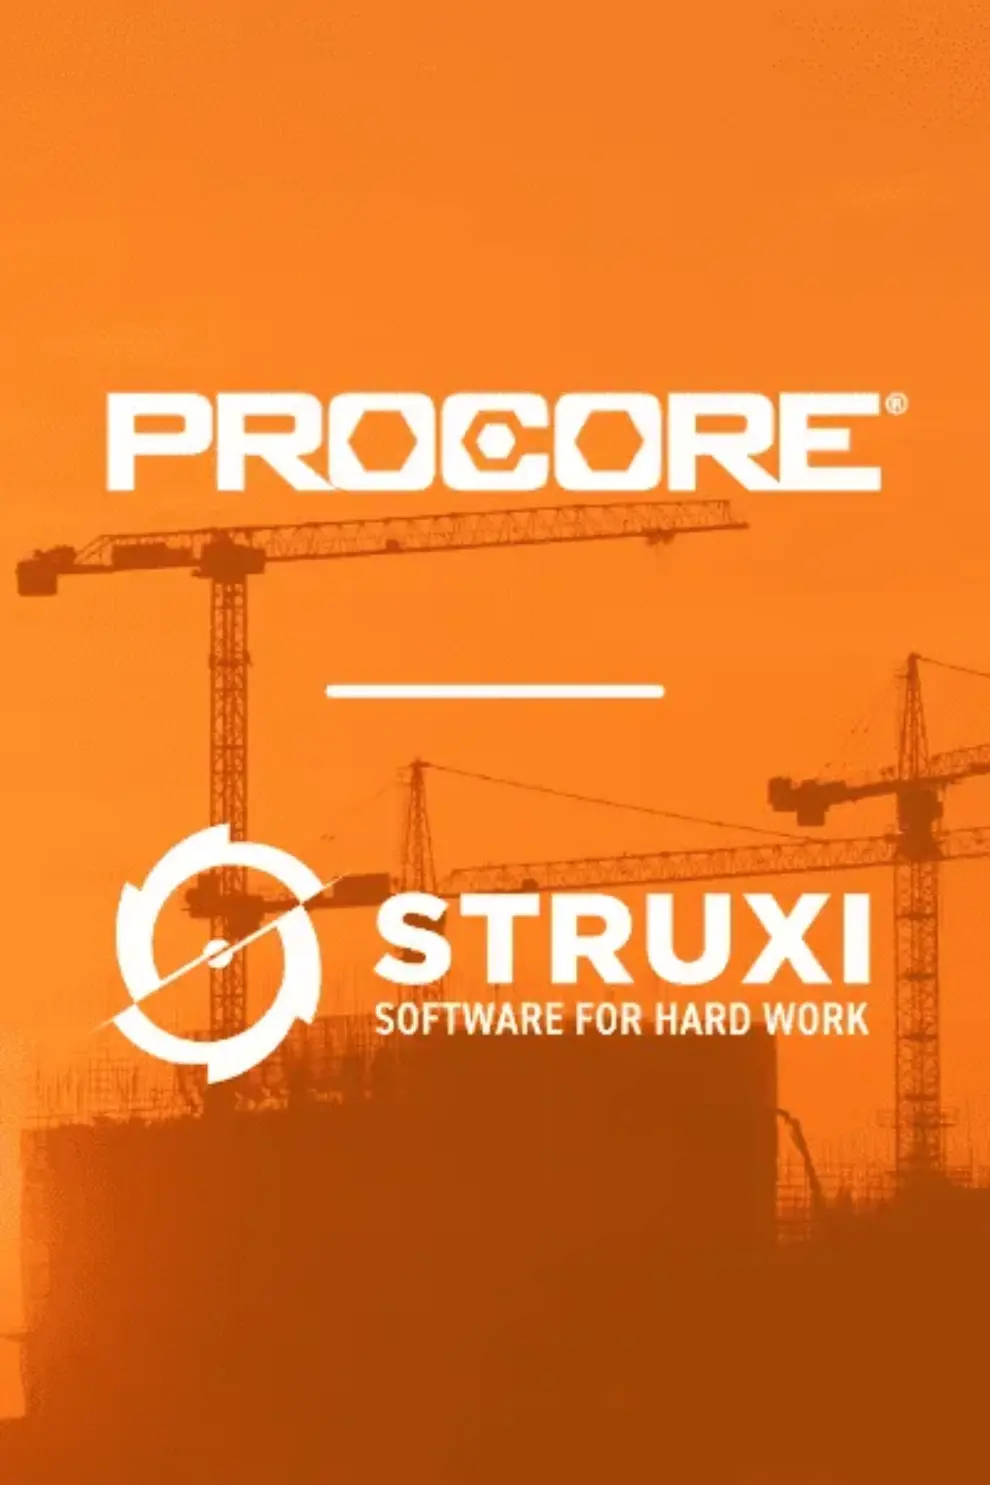 STRUXI Announces Procore Integration